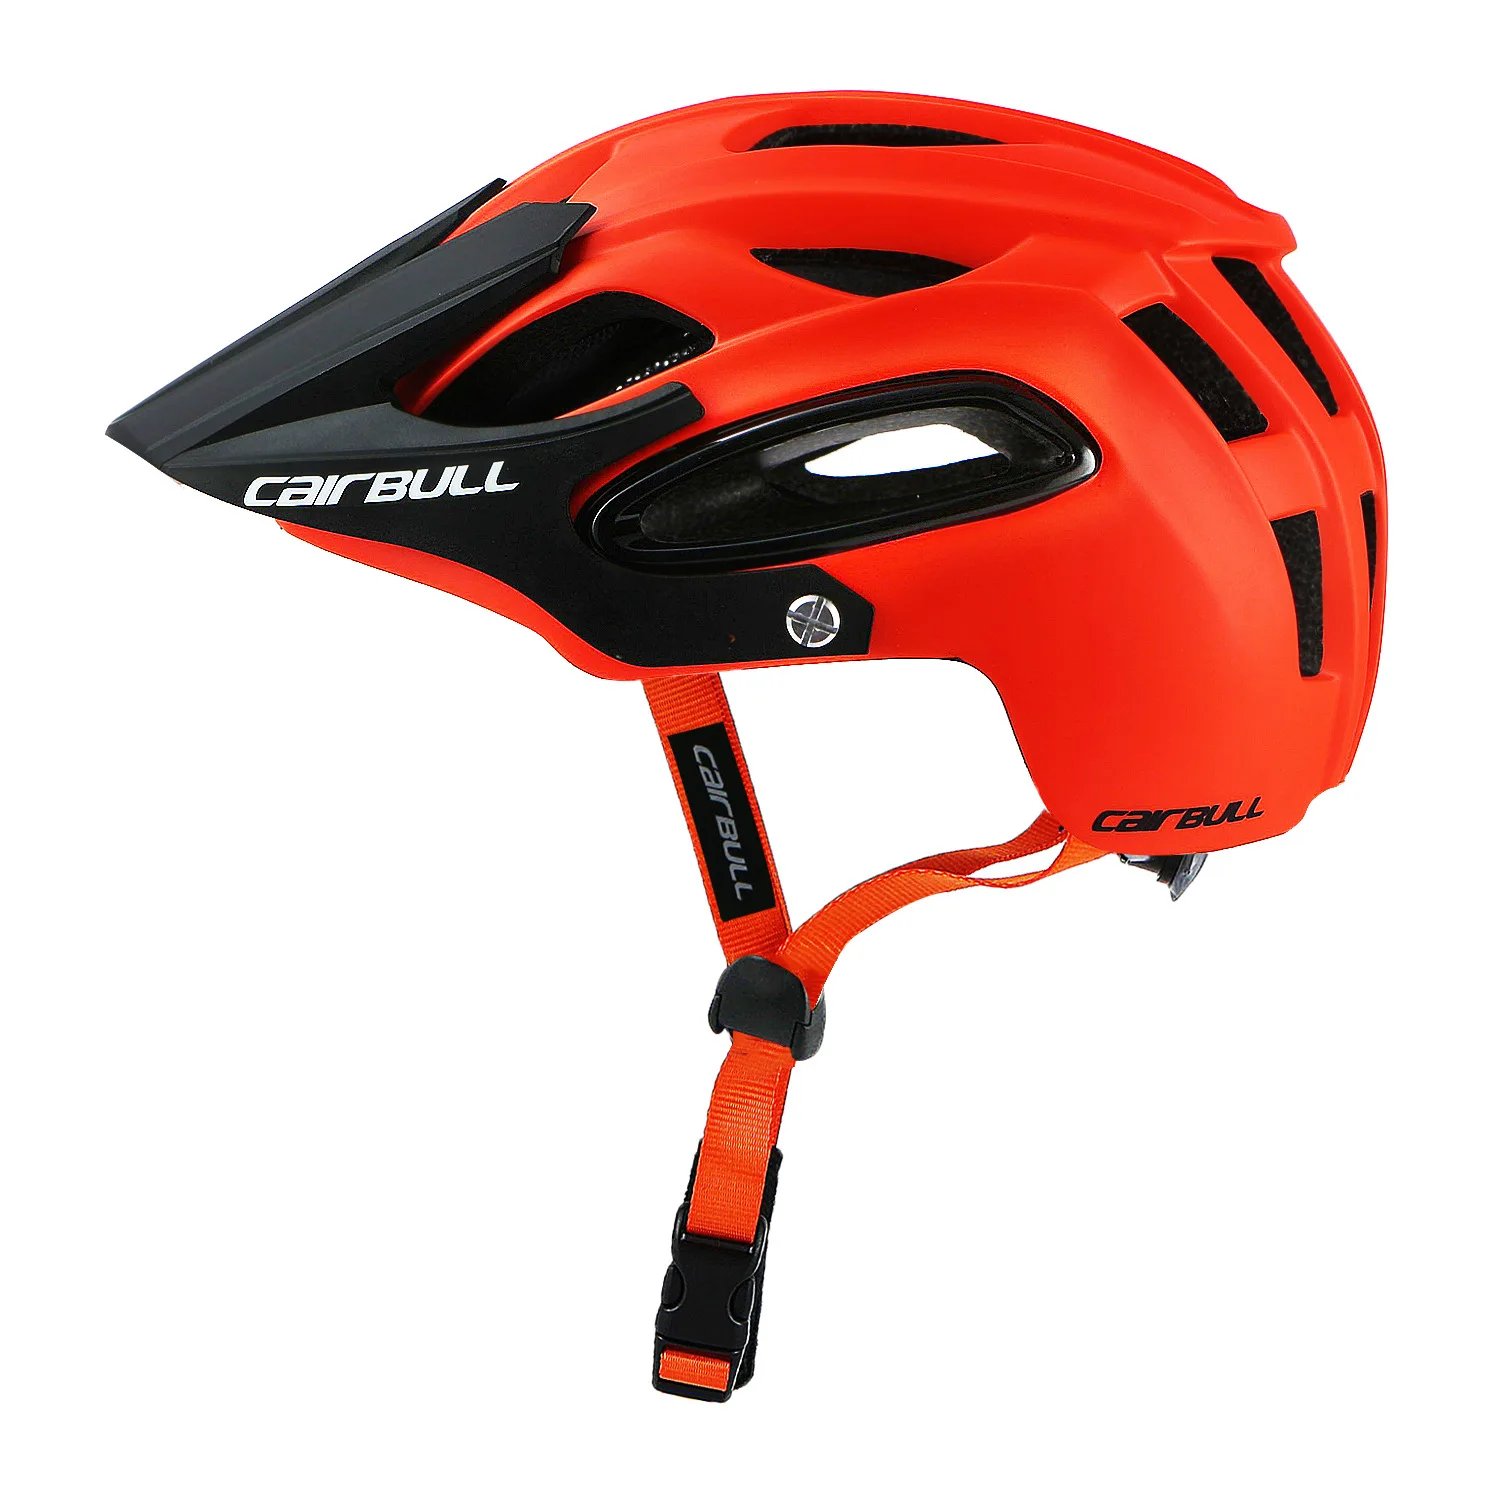 CAIRBULL спортивный велосипедный гоночный шлем дополнительный цвет горный шоссейный велосипедный шлем с запасной подкладкой цельное литье - Цвет: Orange red